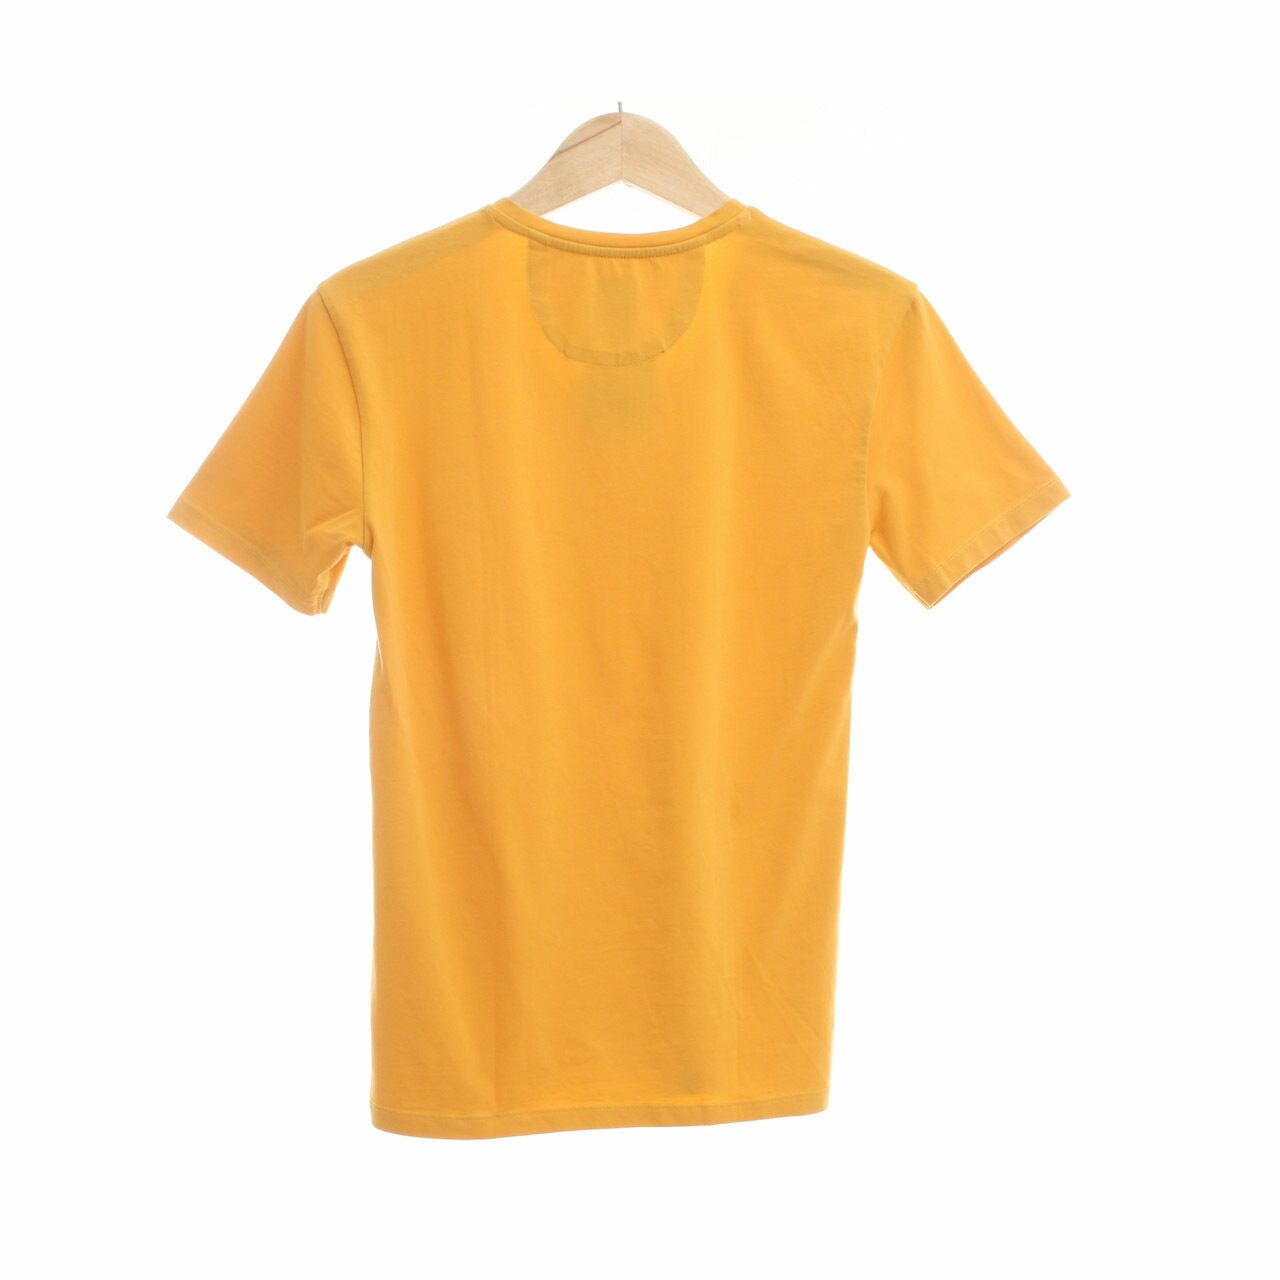 Zara Yellow Tshirt